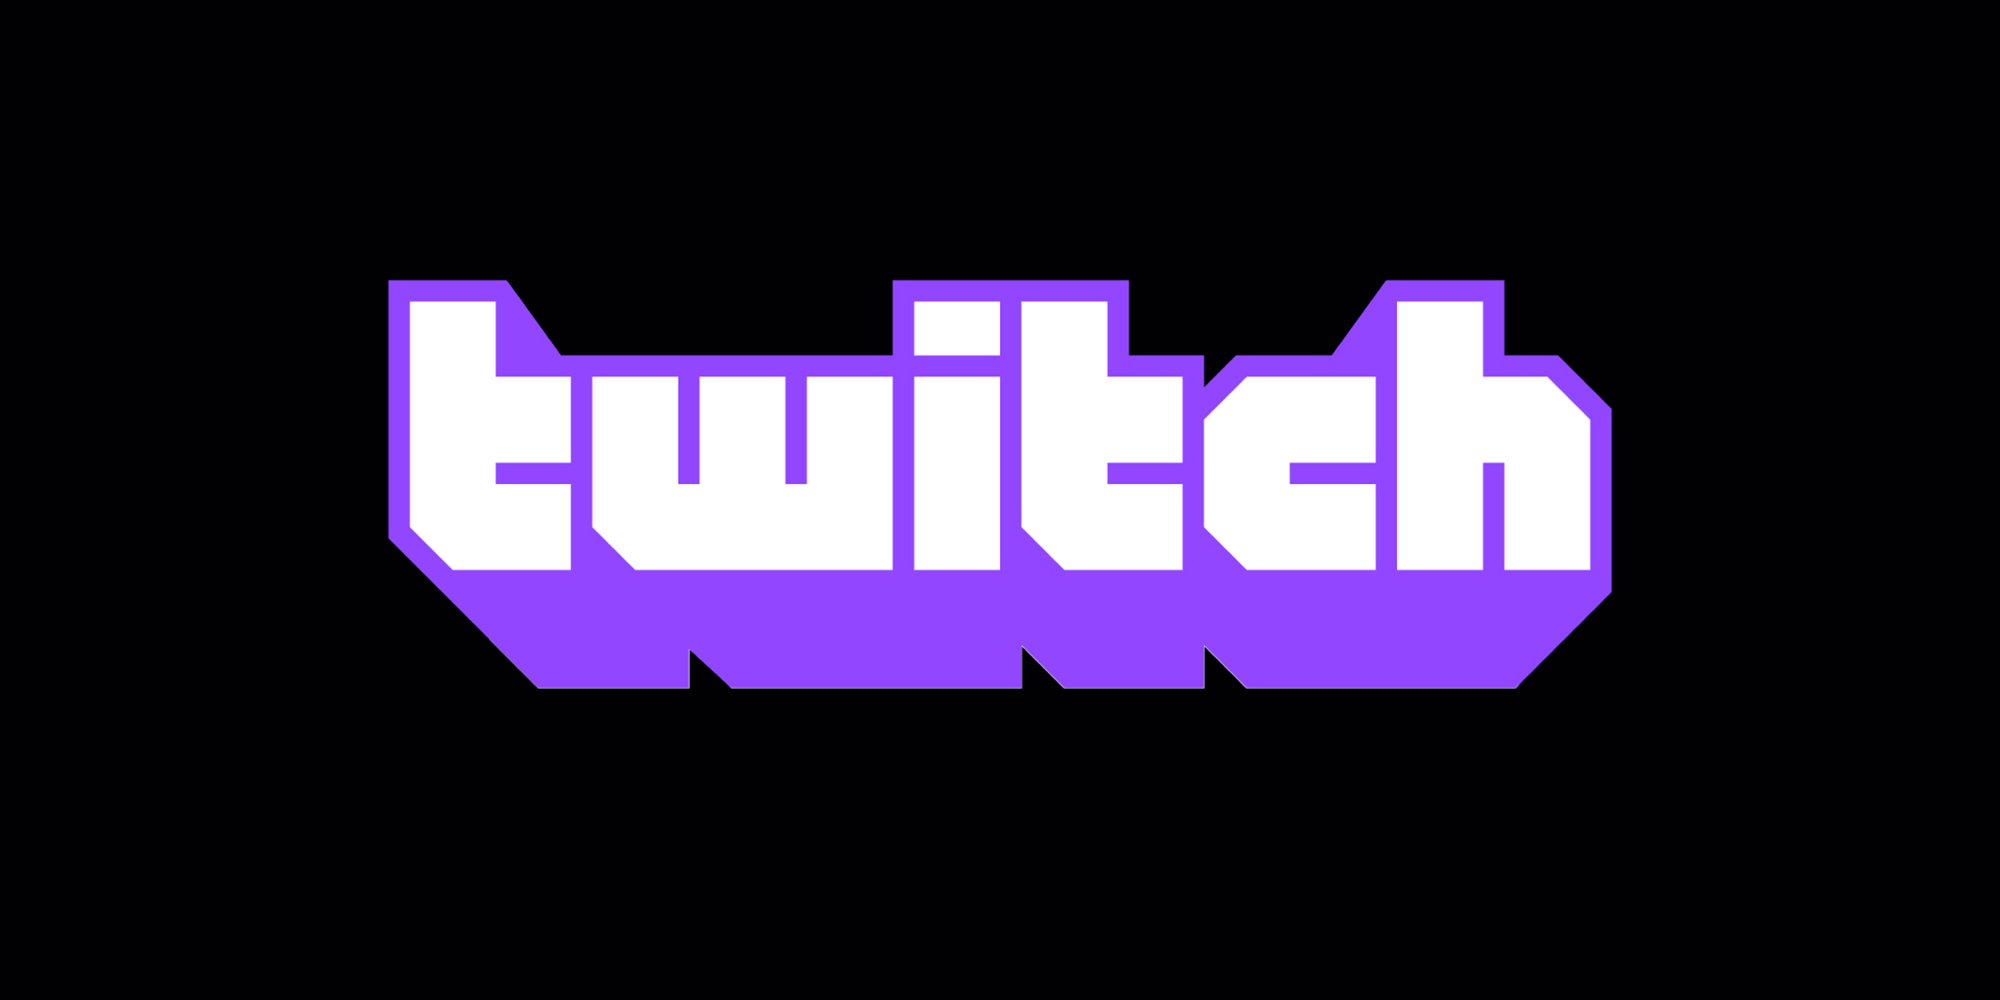 Twitch Logo Black